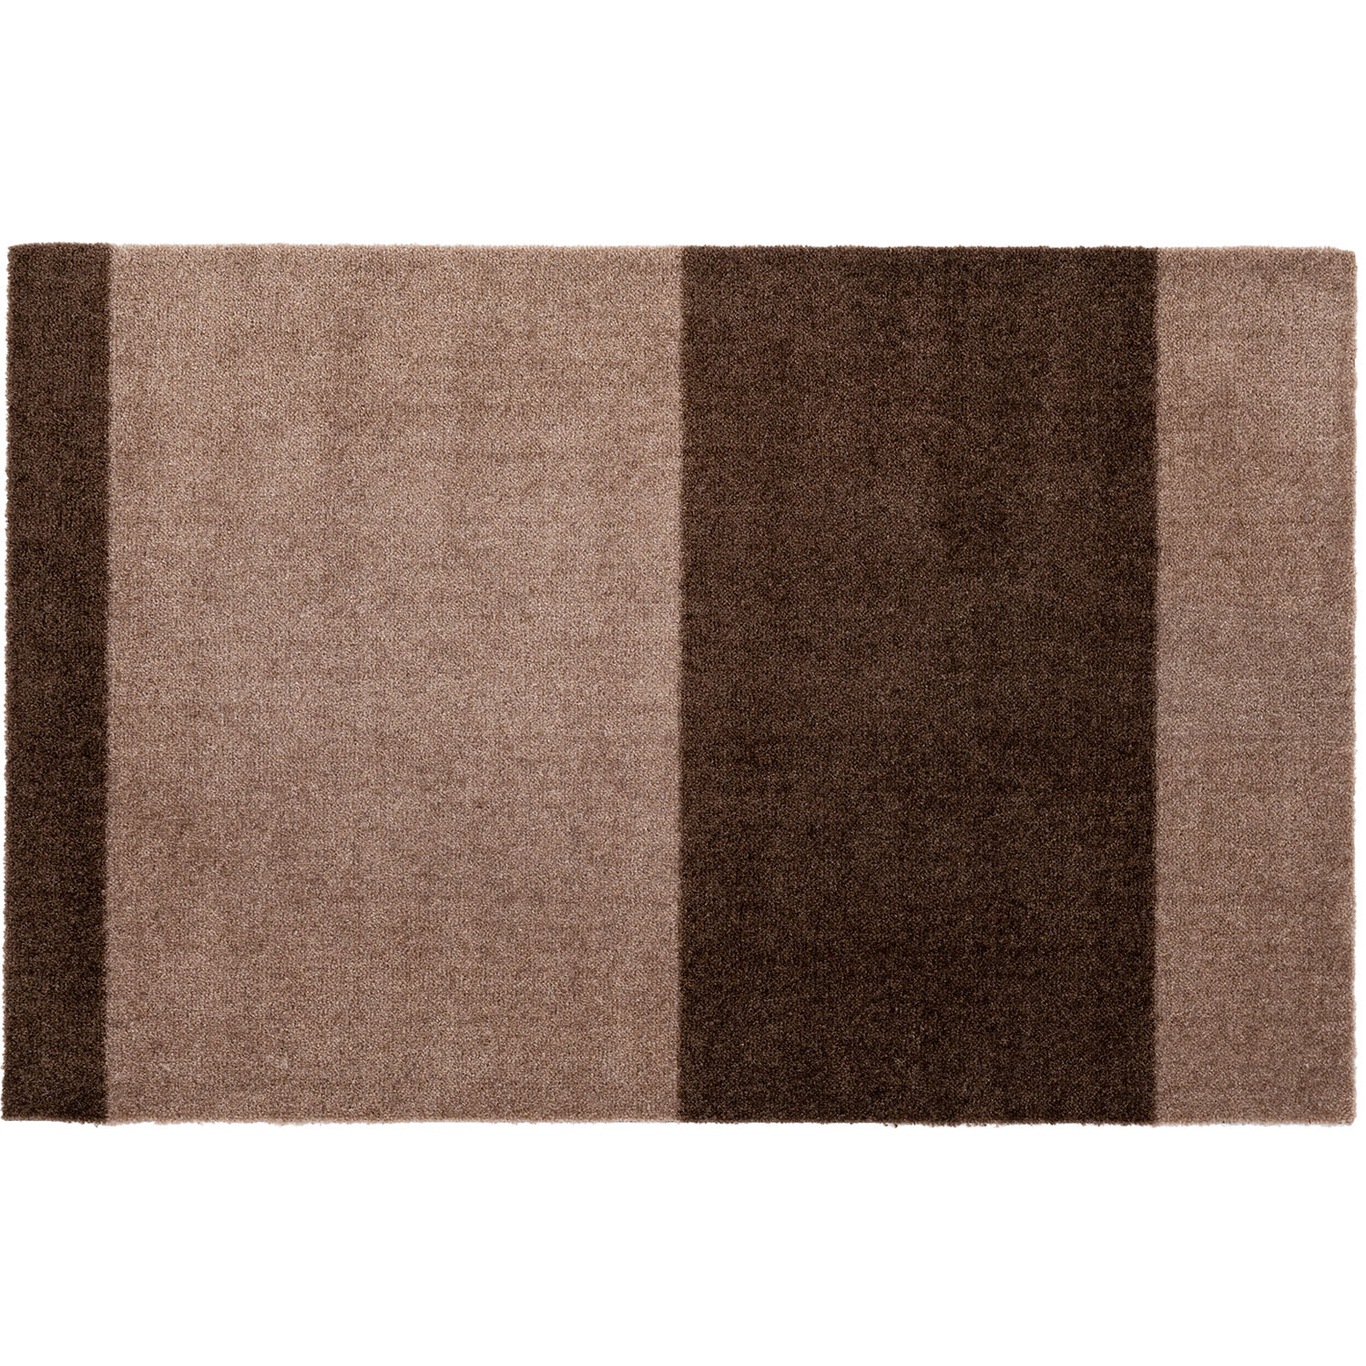 Stripes Matto Sand / Ruskea, 60x90 cm